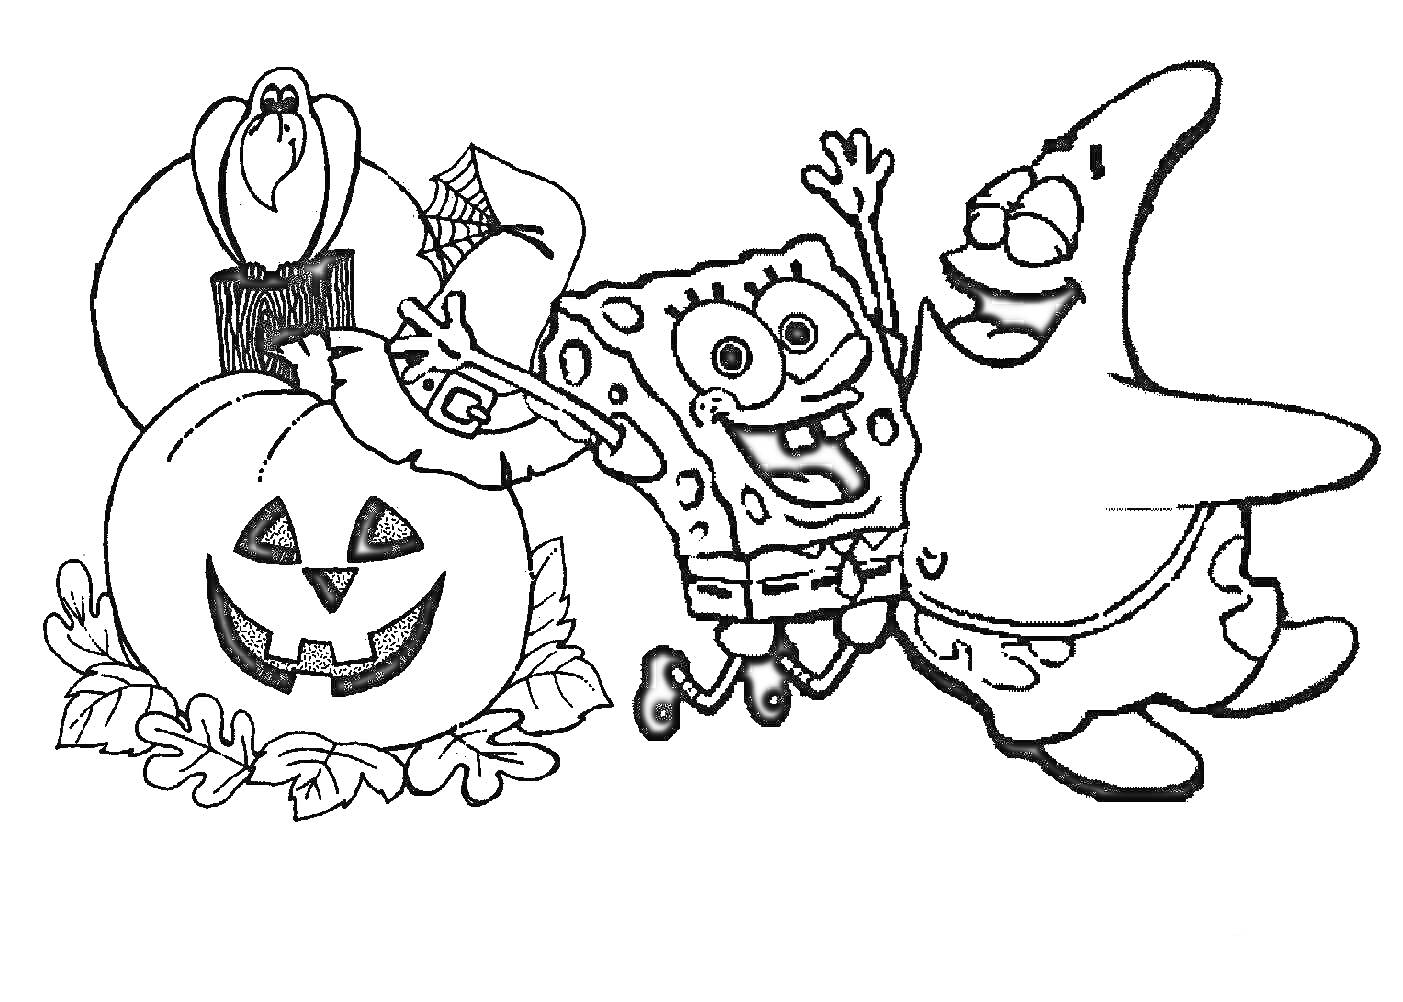 Губка Боб и Патрик празднуют Хэллоуин рядом с тыквой и привидением